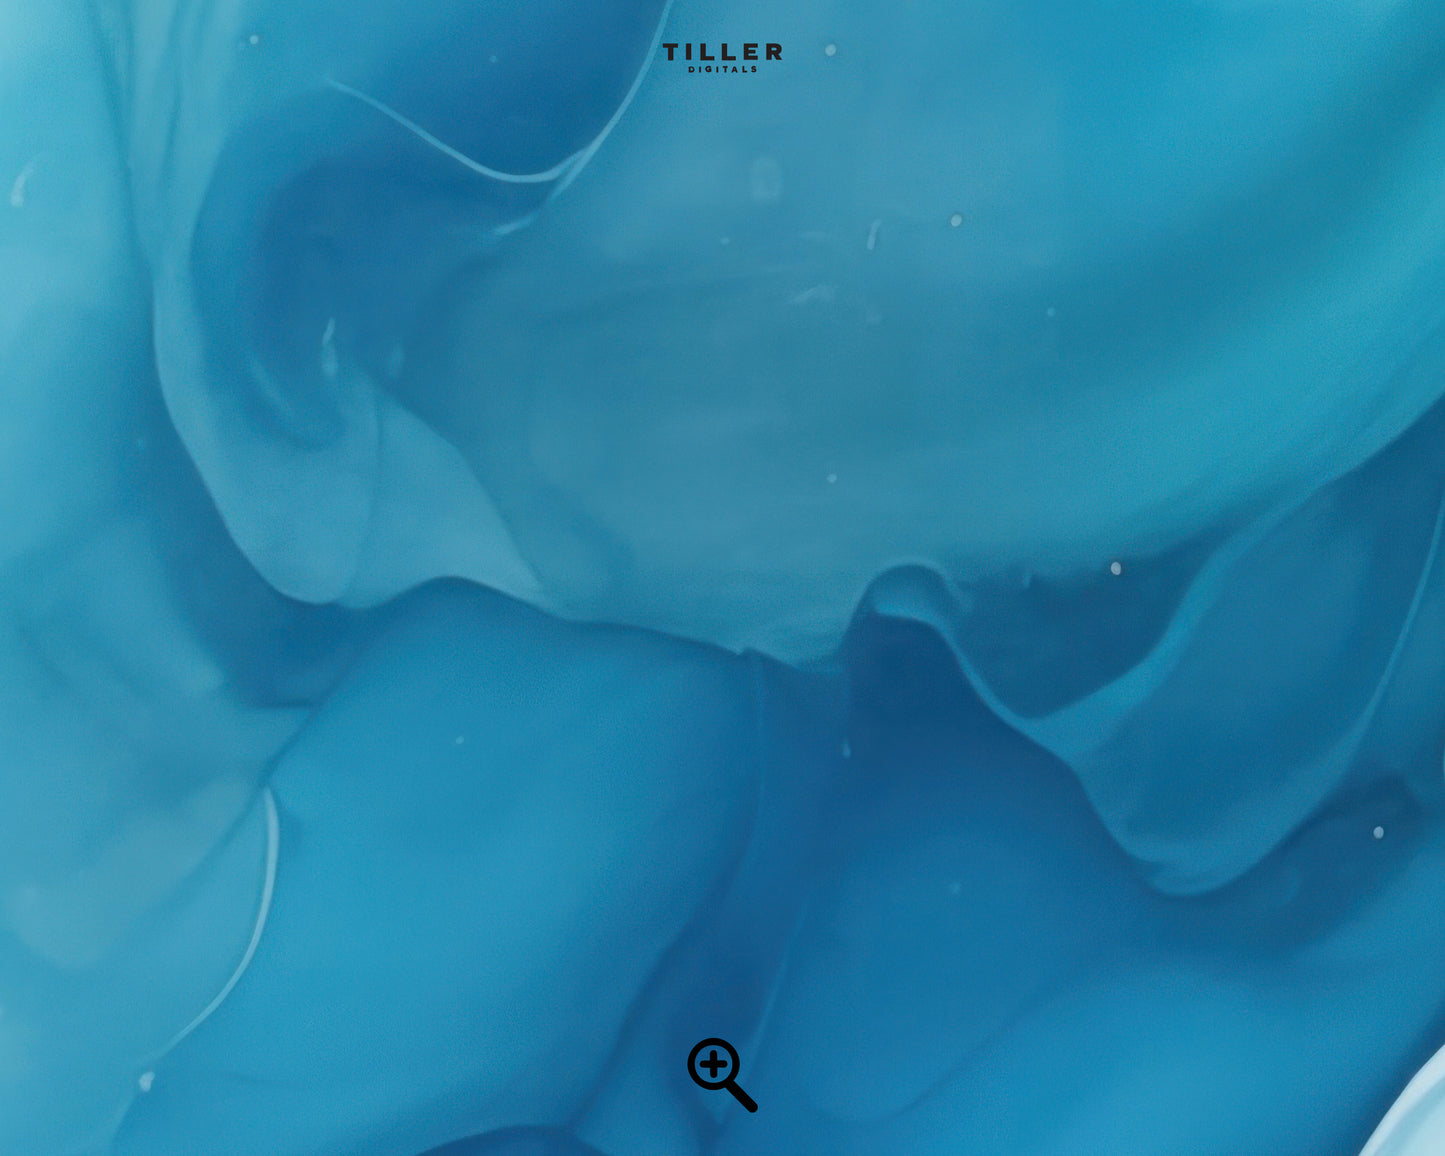 Blue Fluid Art: Abstract Flow - No. 01